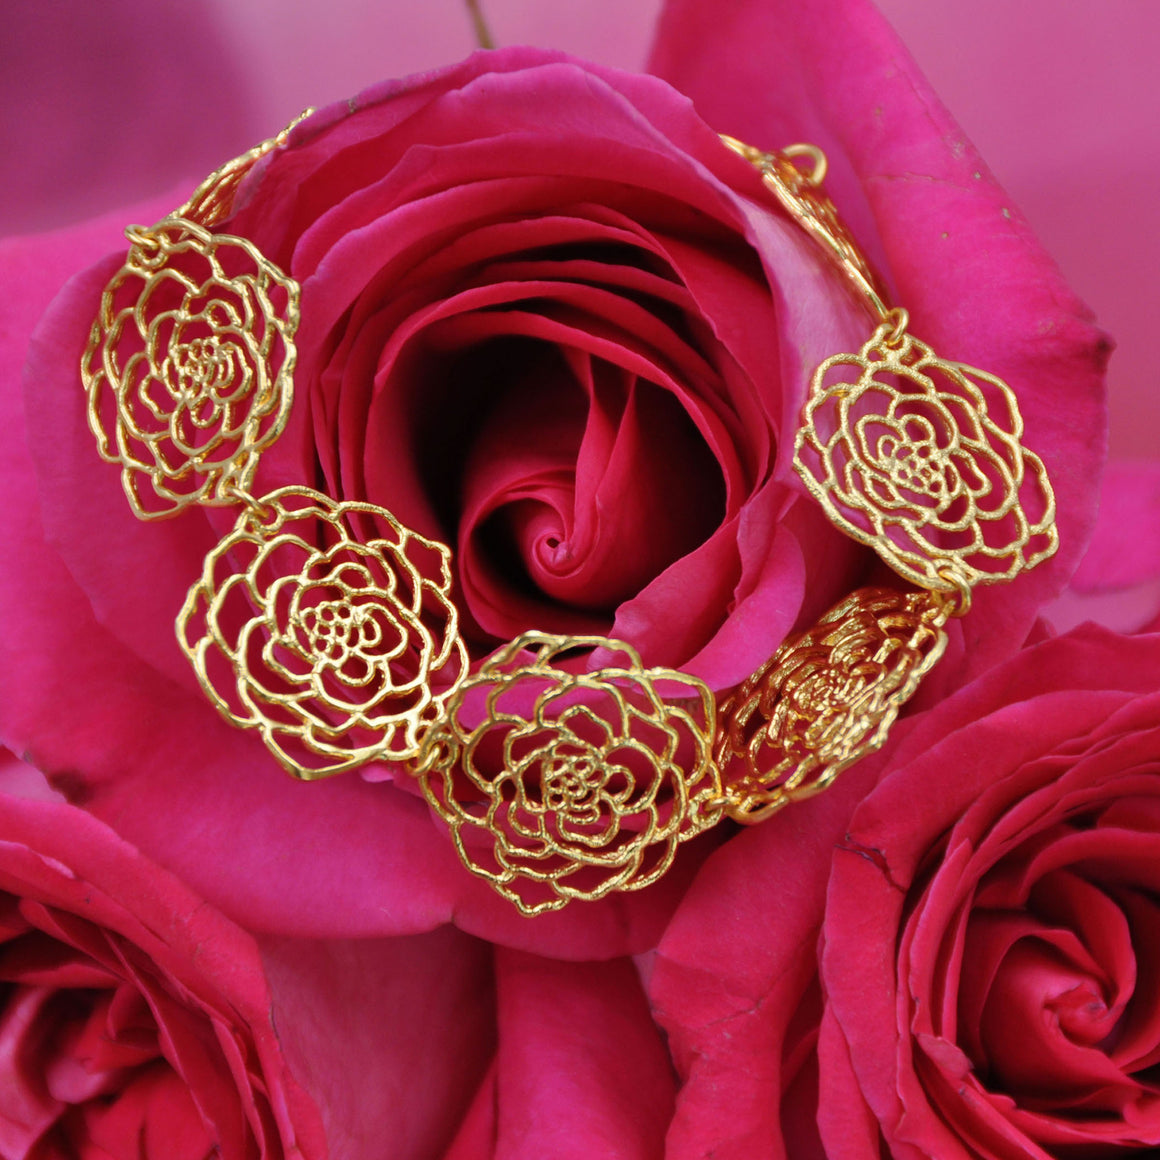 Rose Link Bracelet - 24K Gold Plated